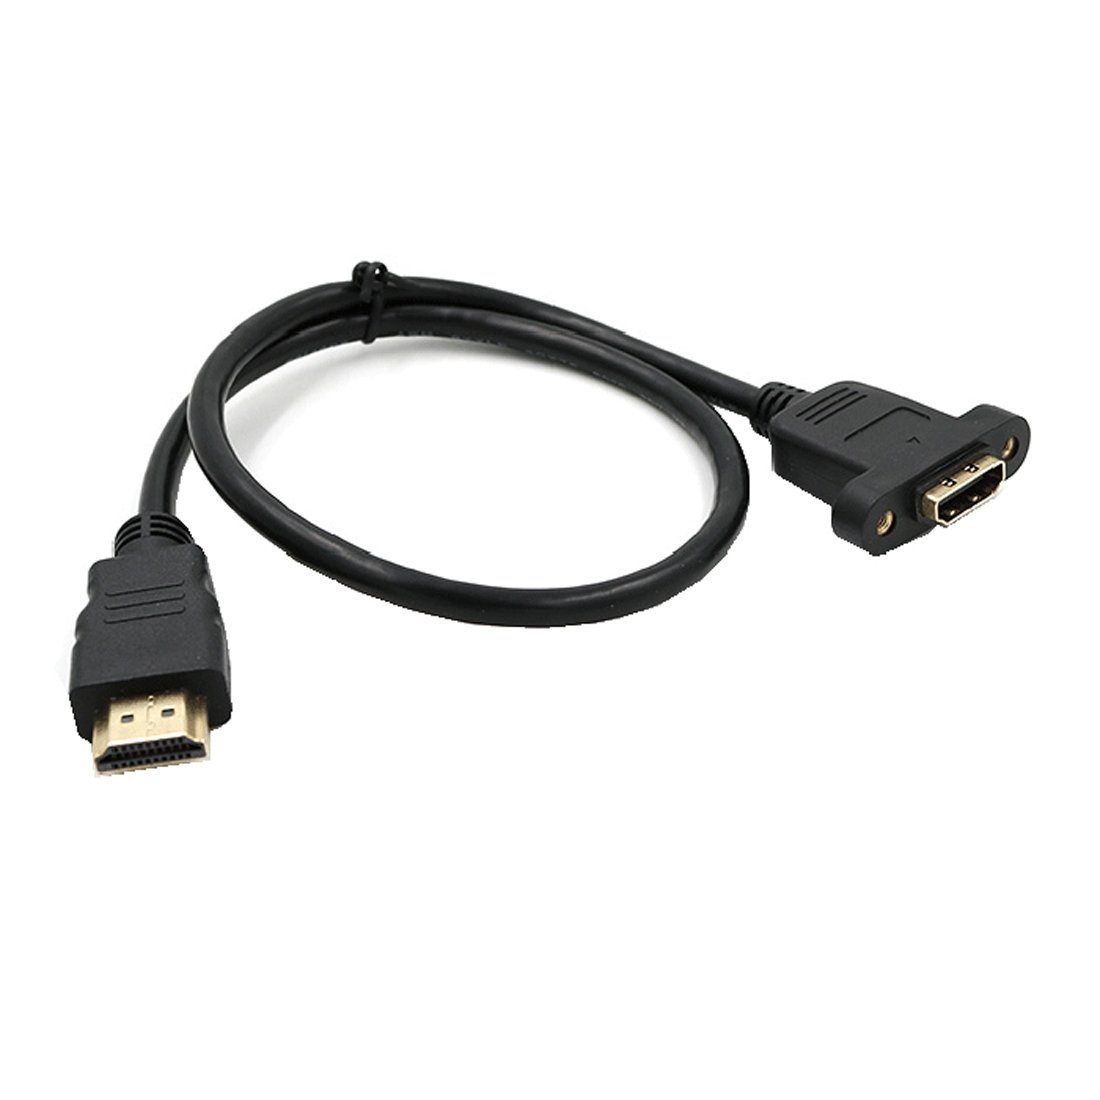 Bolwins »D49 Bolwins 30cm HDMI Verlängerungskabel Adapter HDMI Stecker auf  Buchse für PC TV Monitor« Verlängerungskabel, (30 cm)